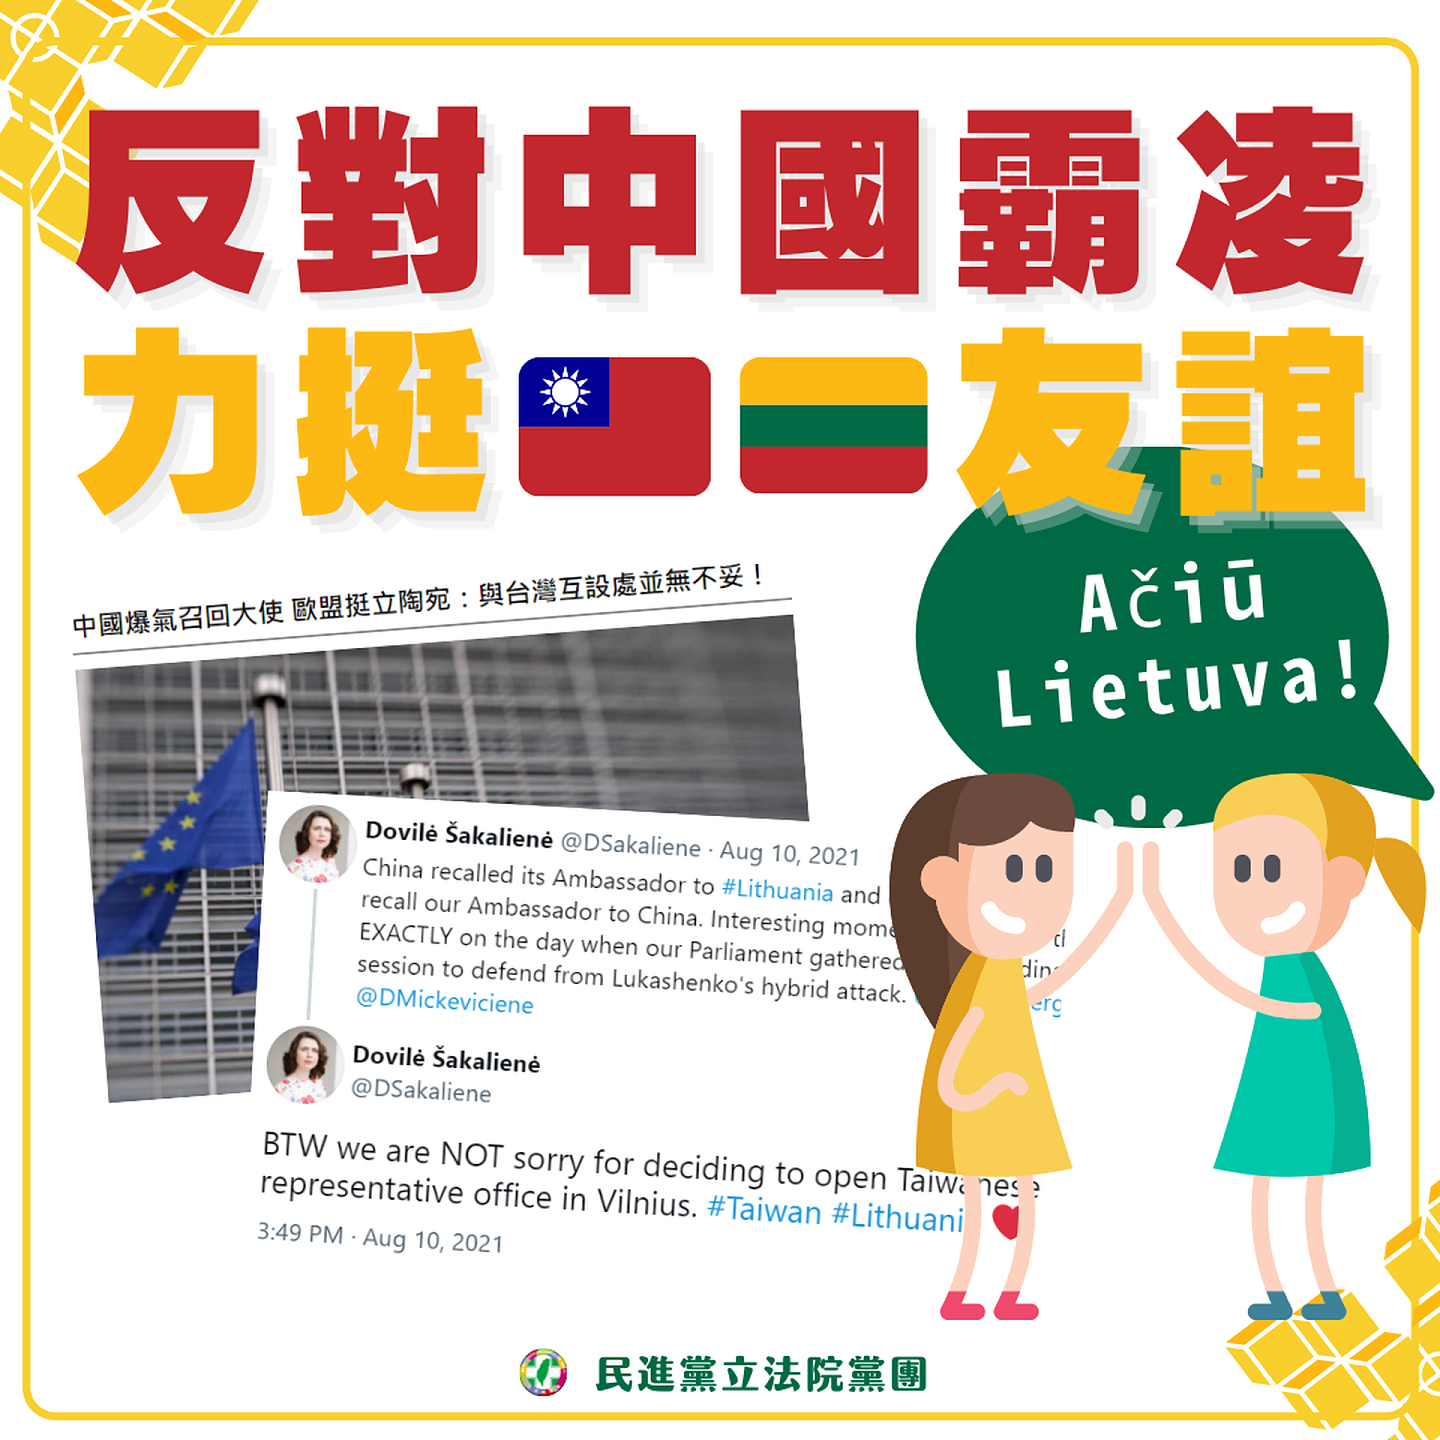 北京对立陶宛允许台湾设立以“台湾”为名的代表处做出强烈反应，台湾民进党称没有国家应该为与台湾友好而受到报复。（台湾民进党立法院党团提供）